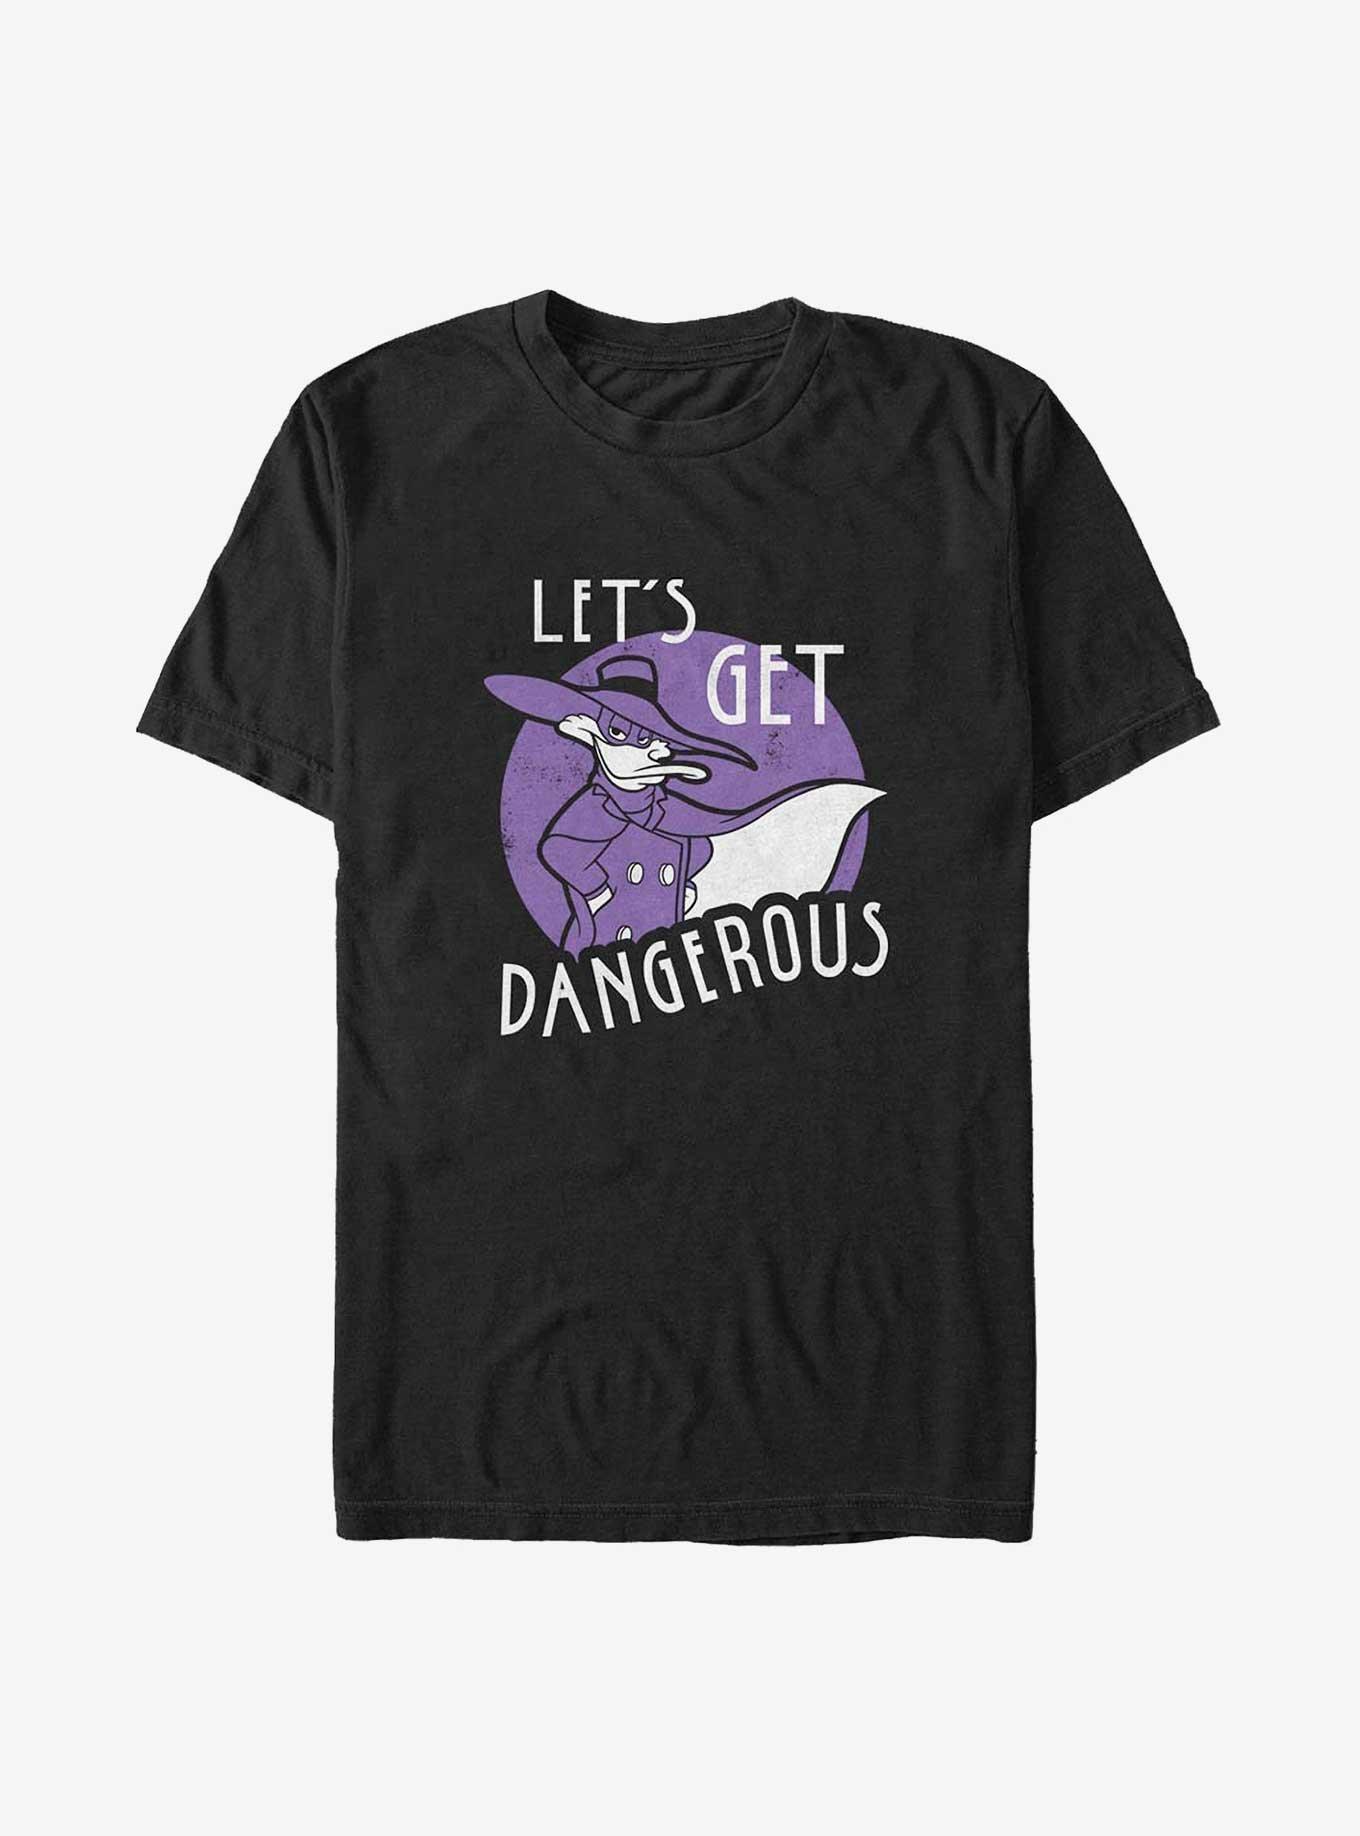 Disney Darkwing Duck Get Dangerous Big & Tall T-Shirt